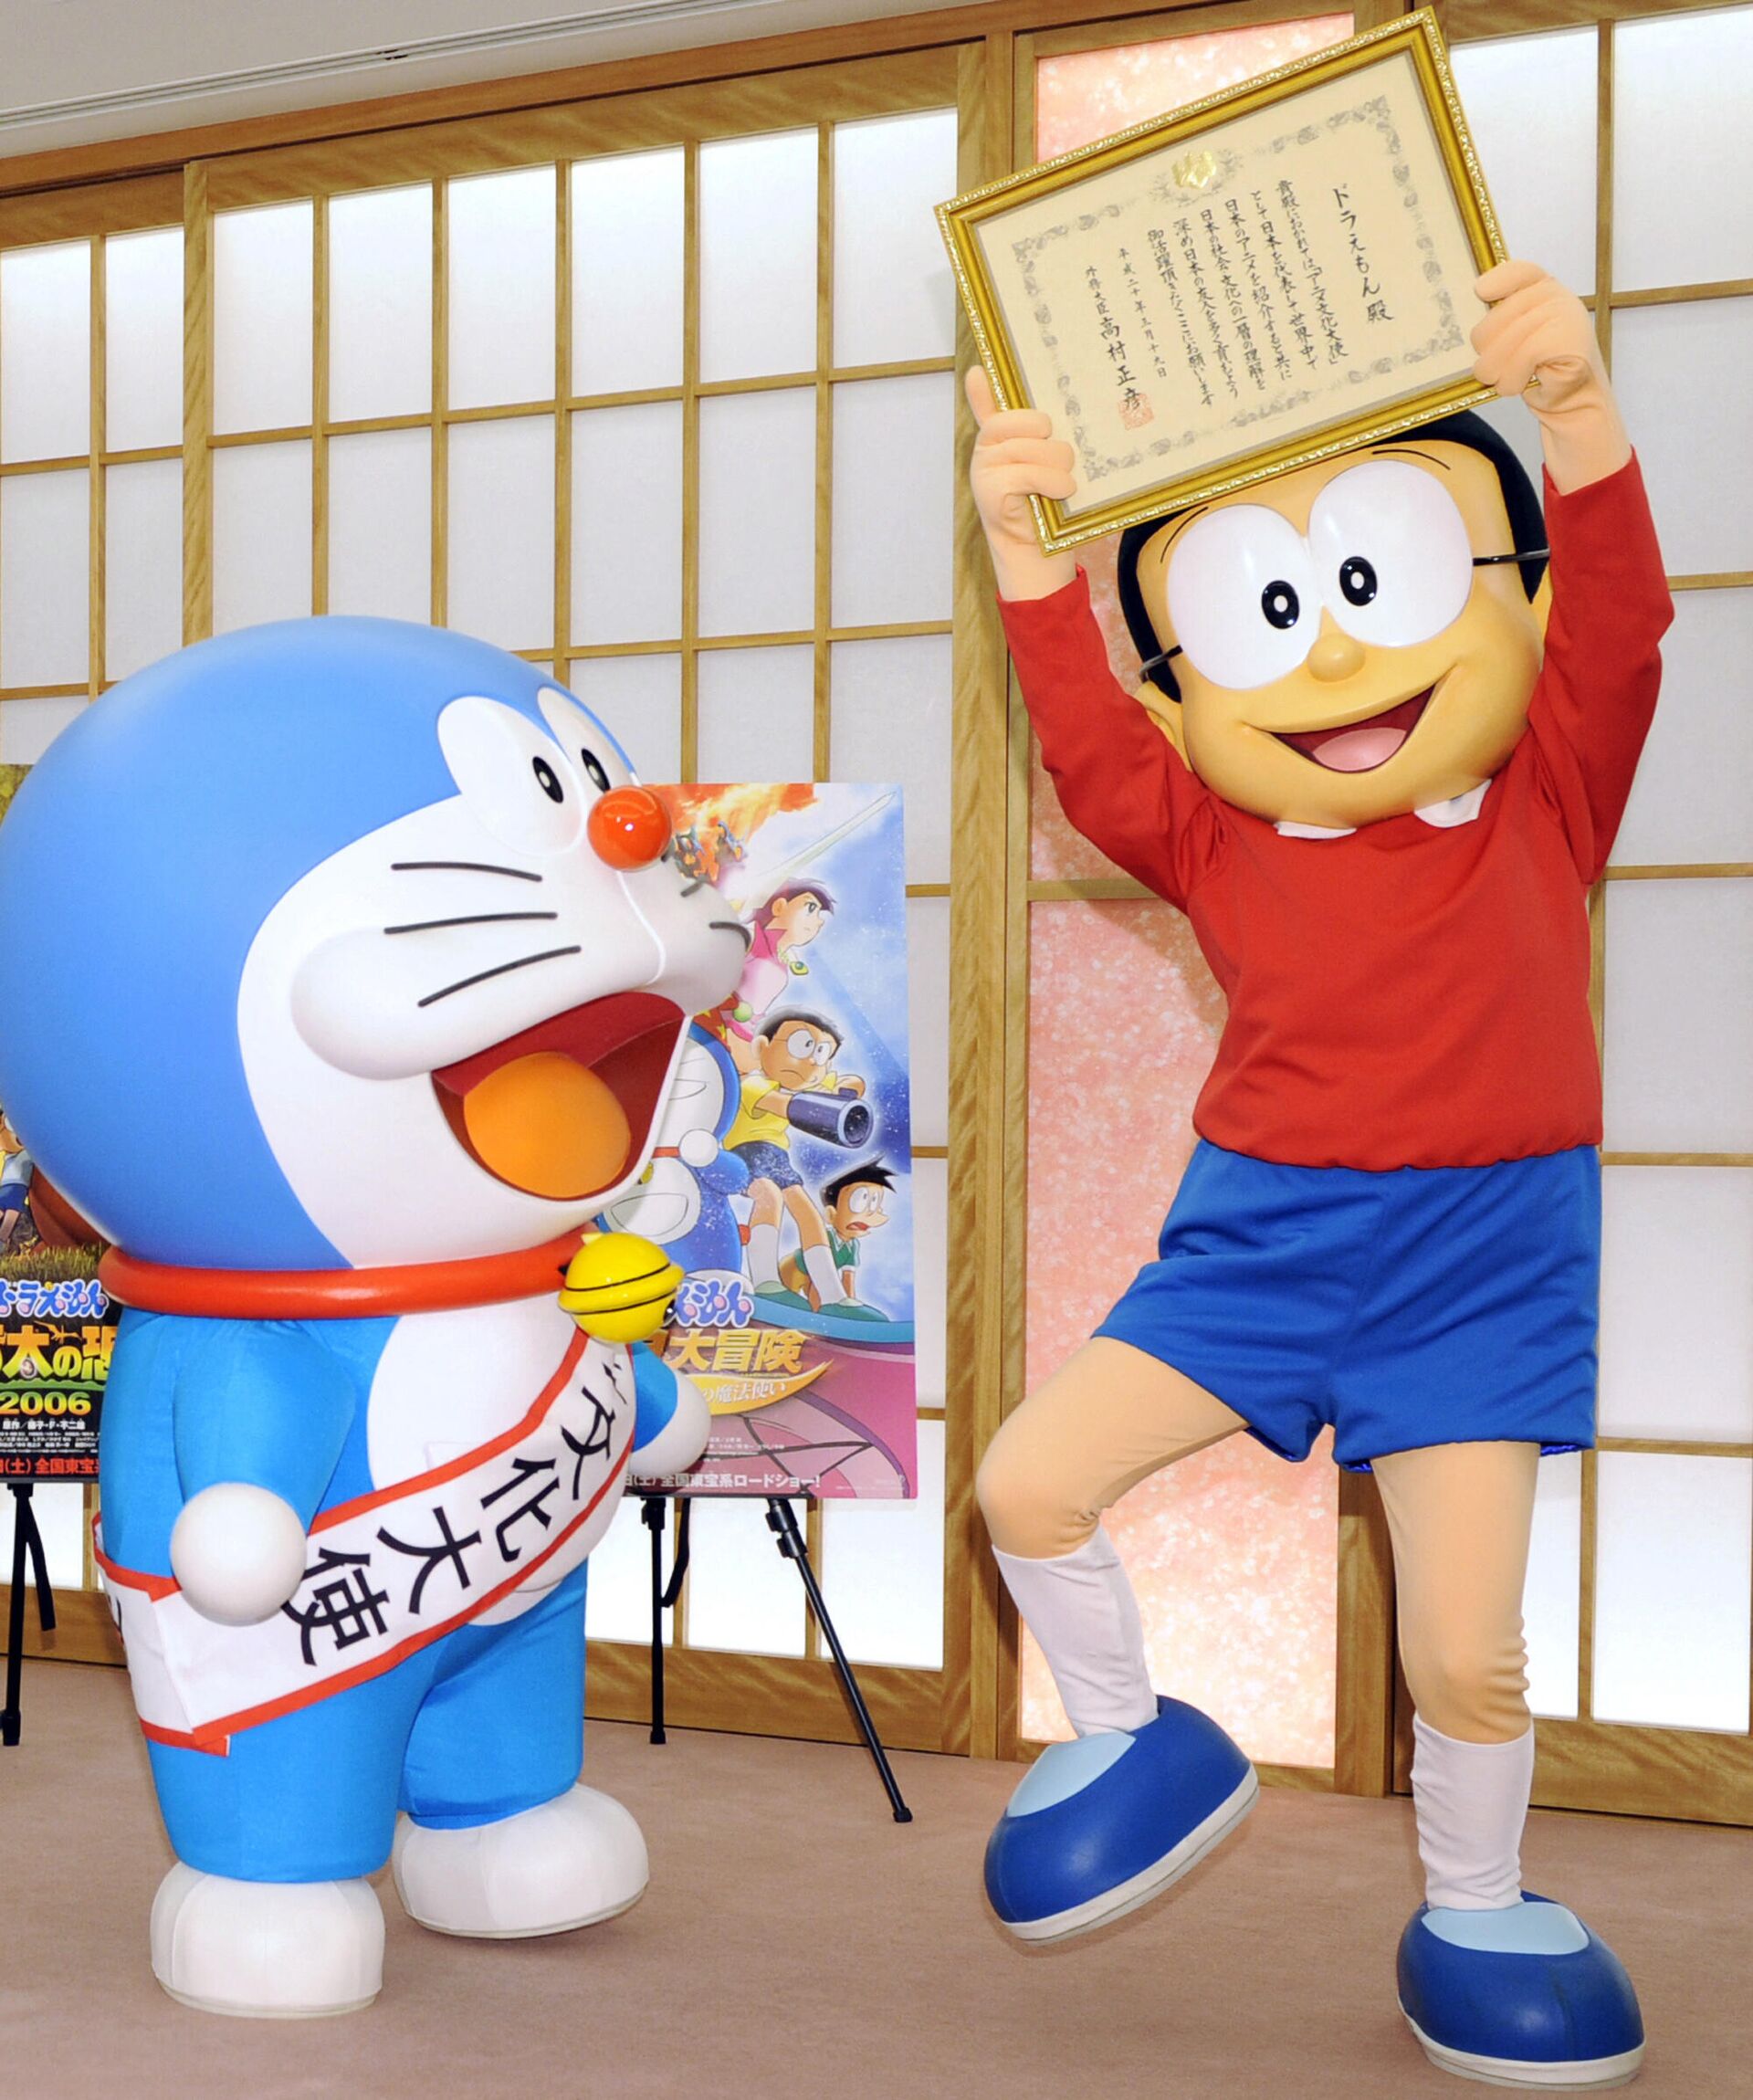 Doraemon y Nobita, personajes del dibujo animado Doraemon, celebran su nombramiento como promotores de la cultura japonesa a través de la animación - Sputnik Mundo, 1920, 14.07.2021